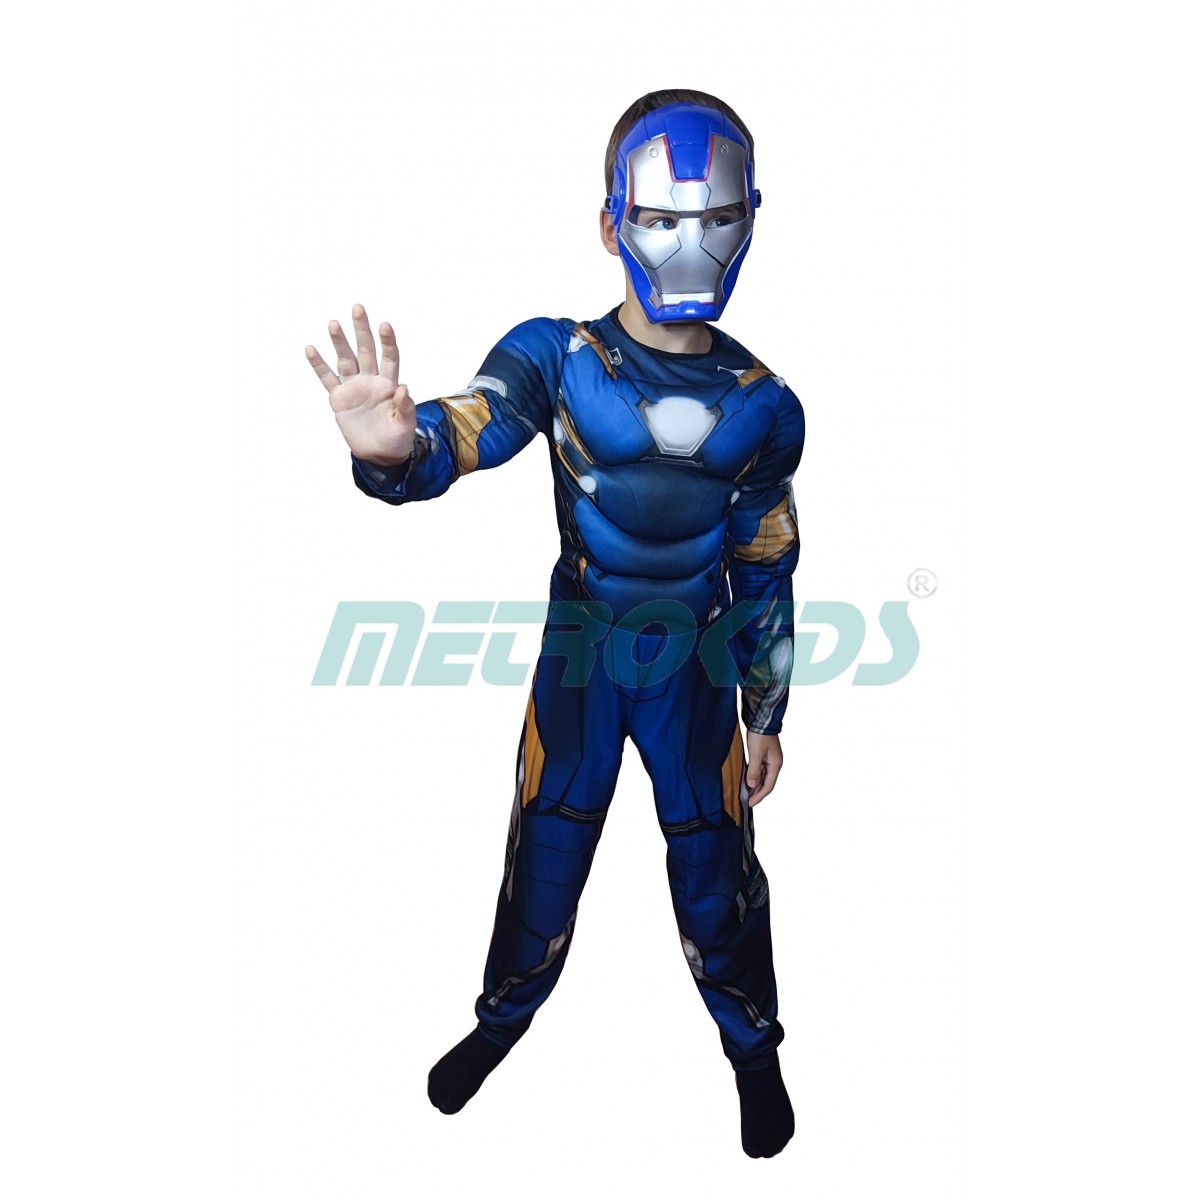 Детский карнавальный костюм Новый Железный Человек Патриот с мускулатурой, MK11129